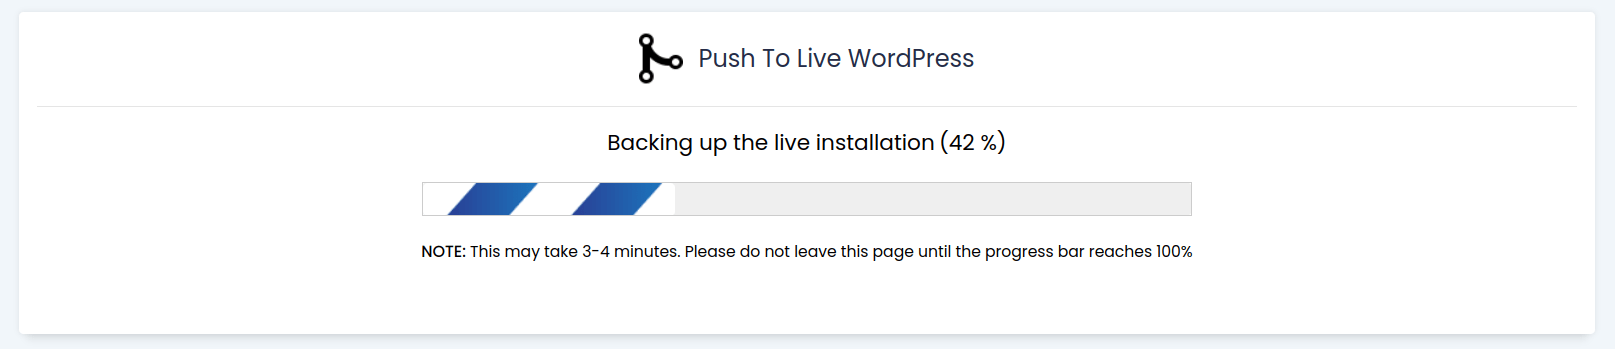 Push to Live WordPress